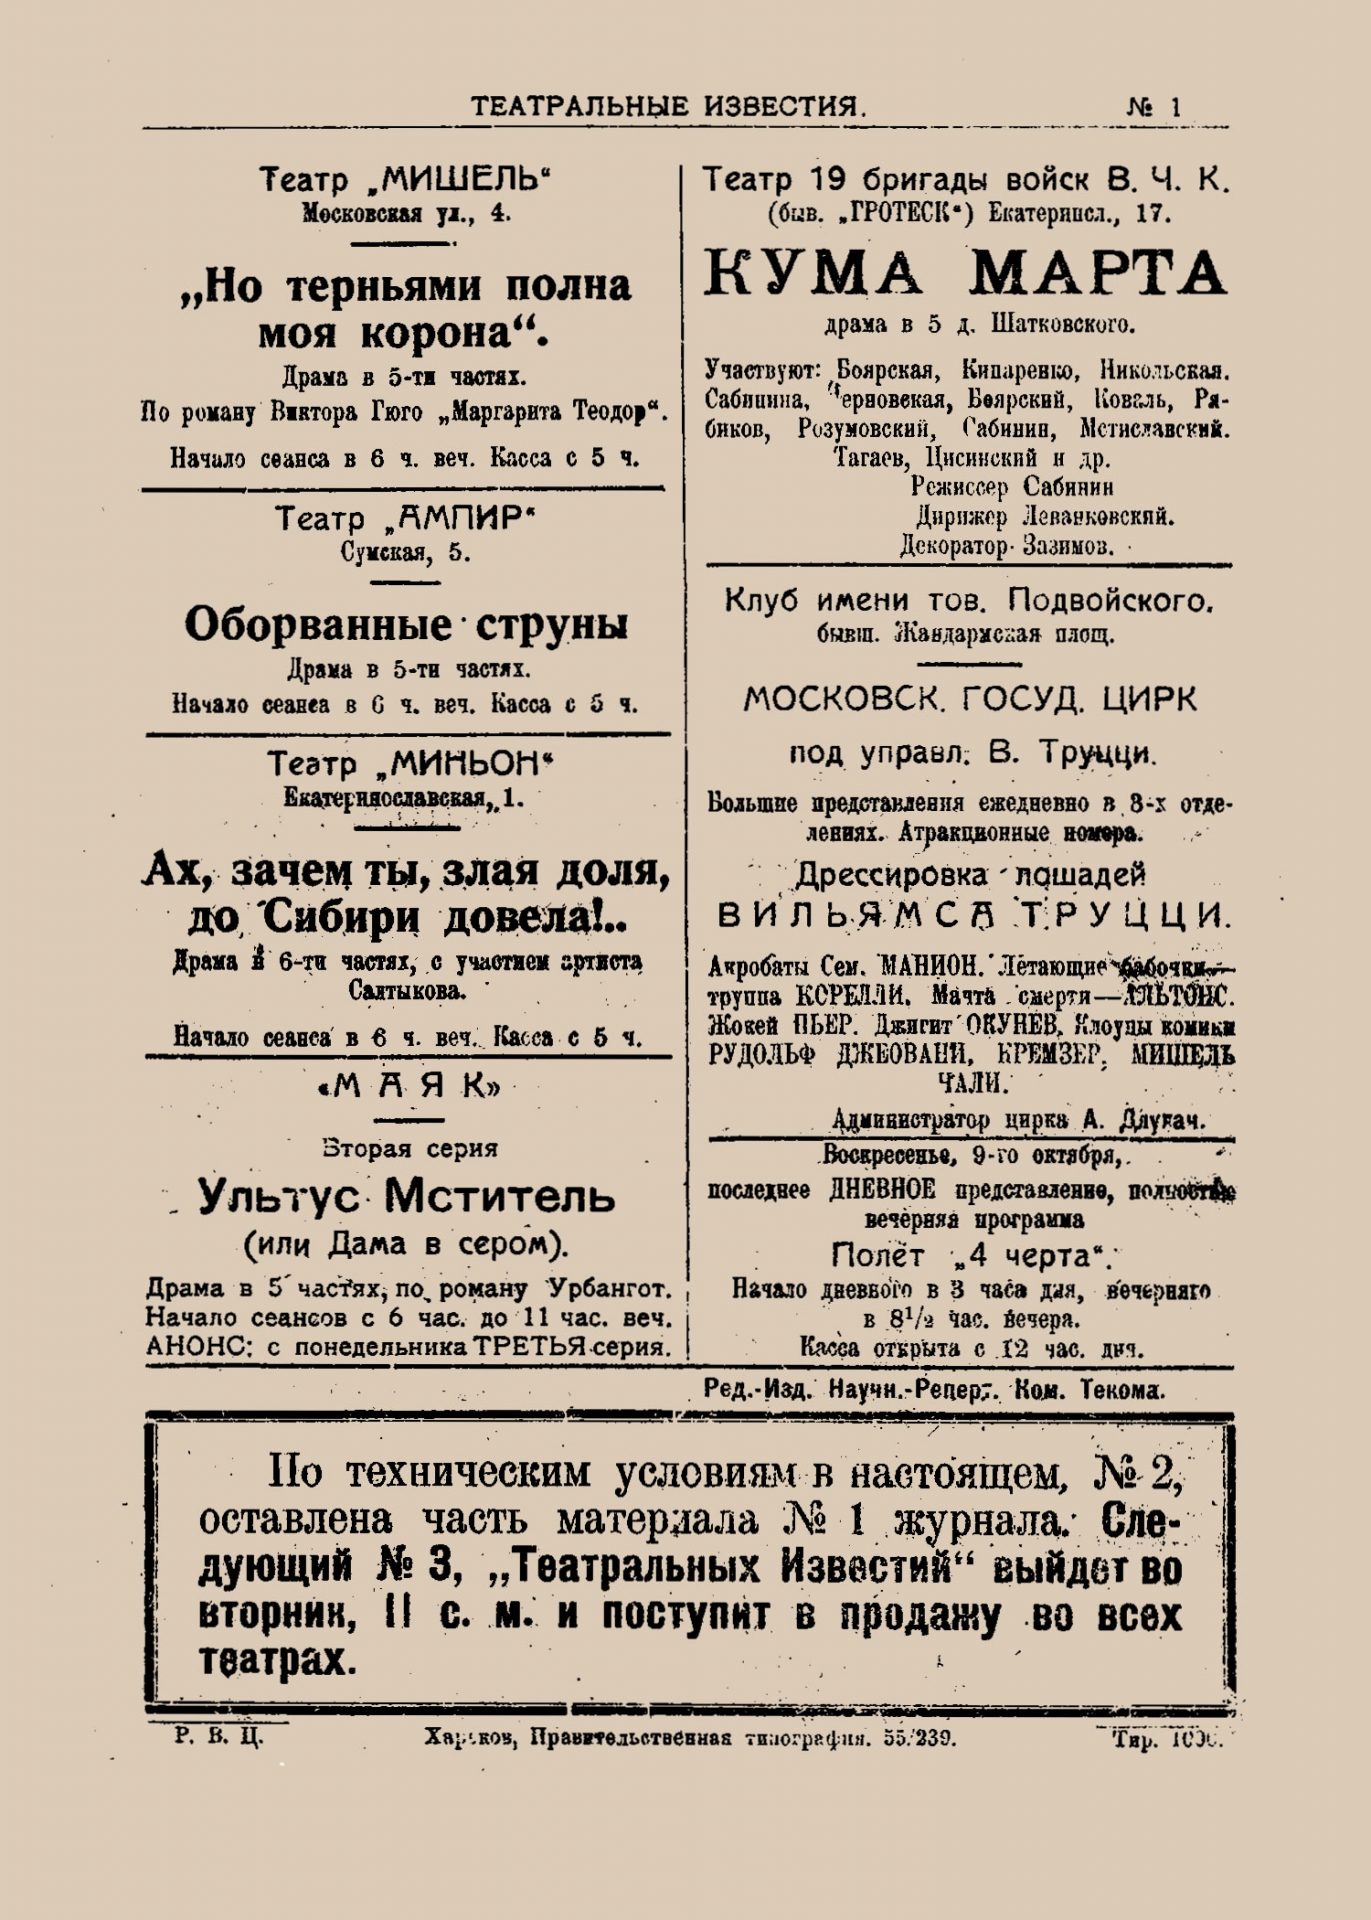 Театральные известия_1921_№1